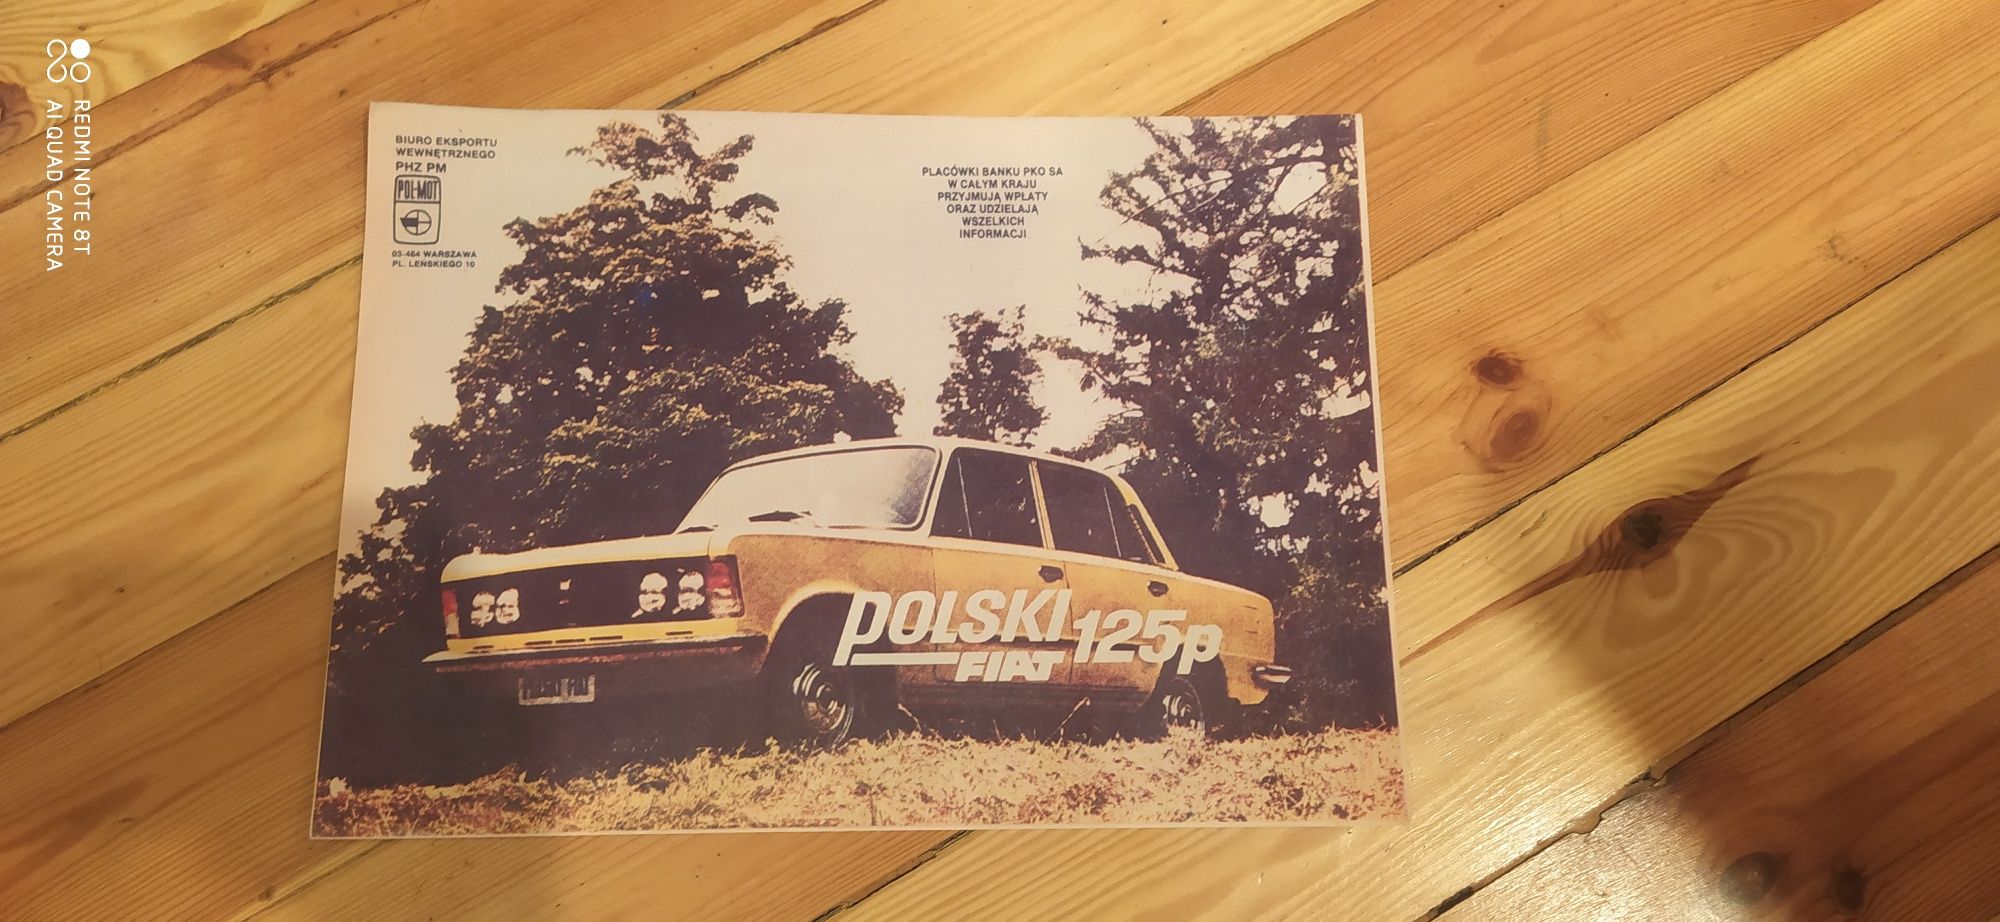 Prospekt plakat Fiat 125p Polonez kant bandyta Wartburg żuk